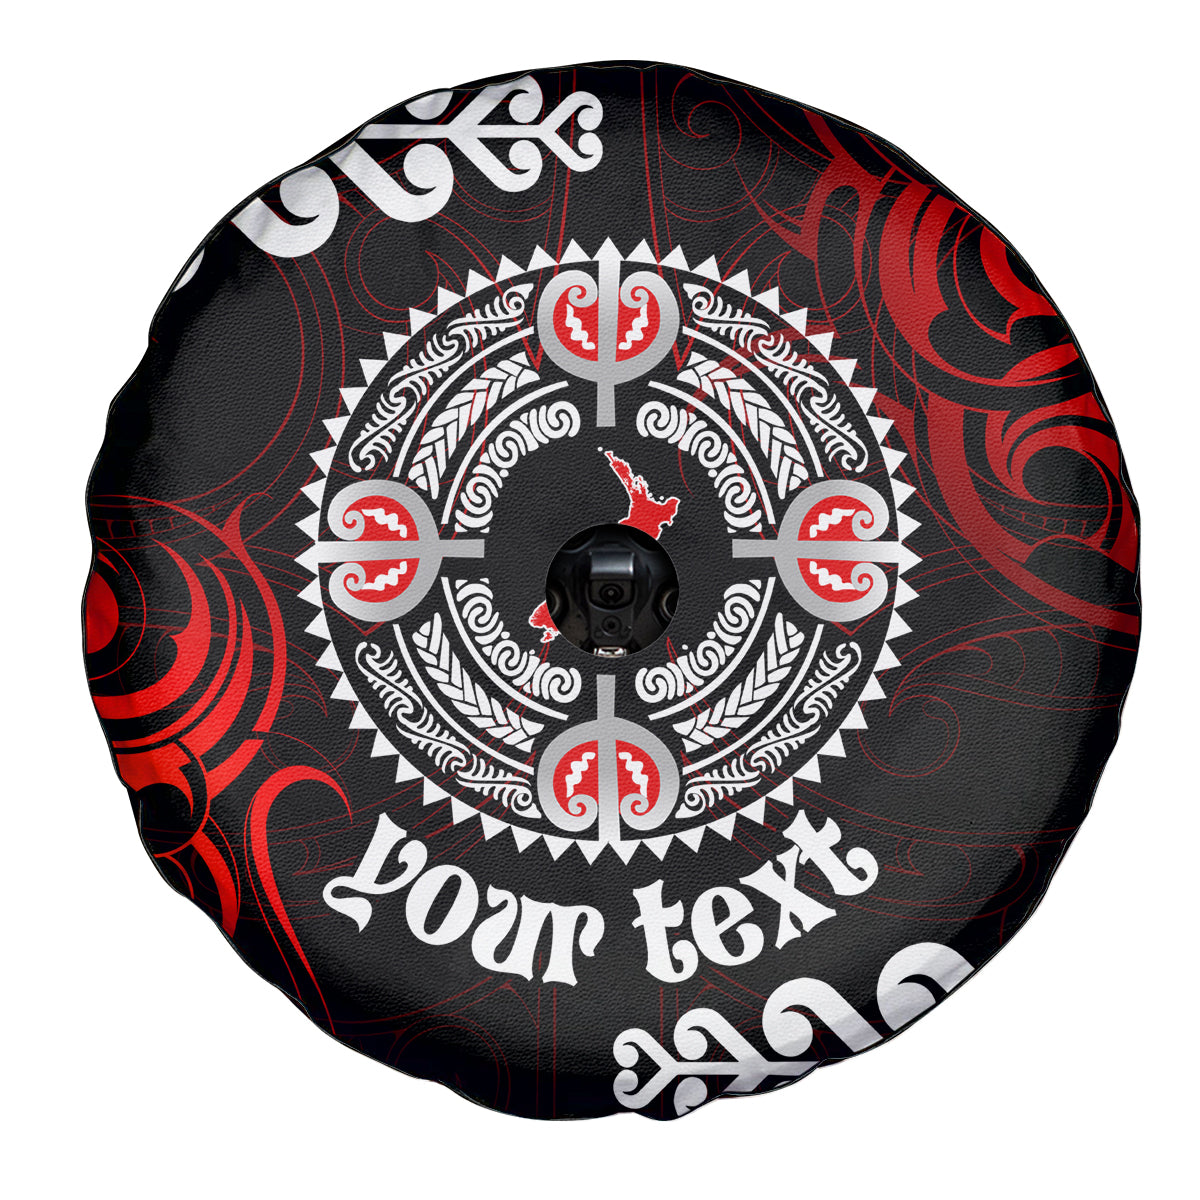 New Zealand Waitangi Day Personalised Spare Tire Cover Aotearoa Te Ra O Waitangi With Maori Tattoo